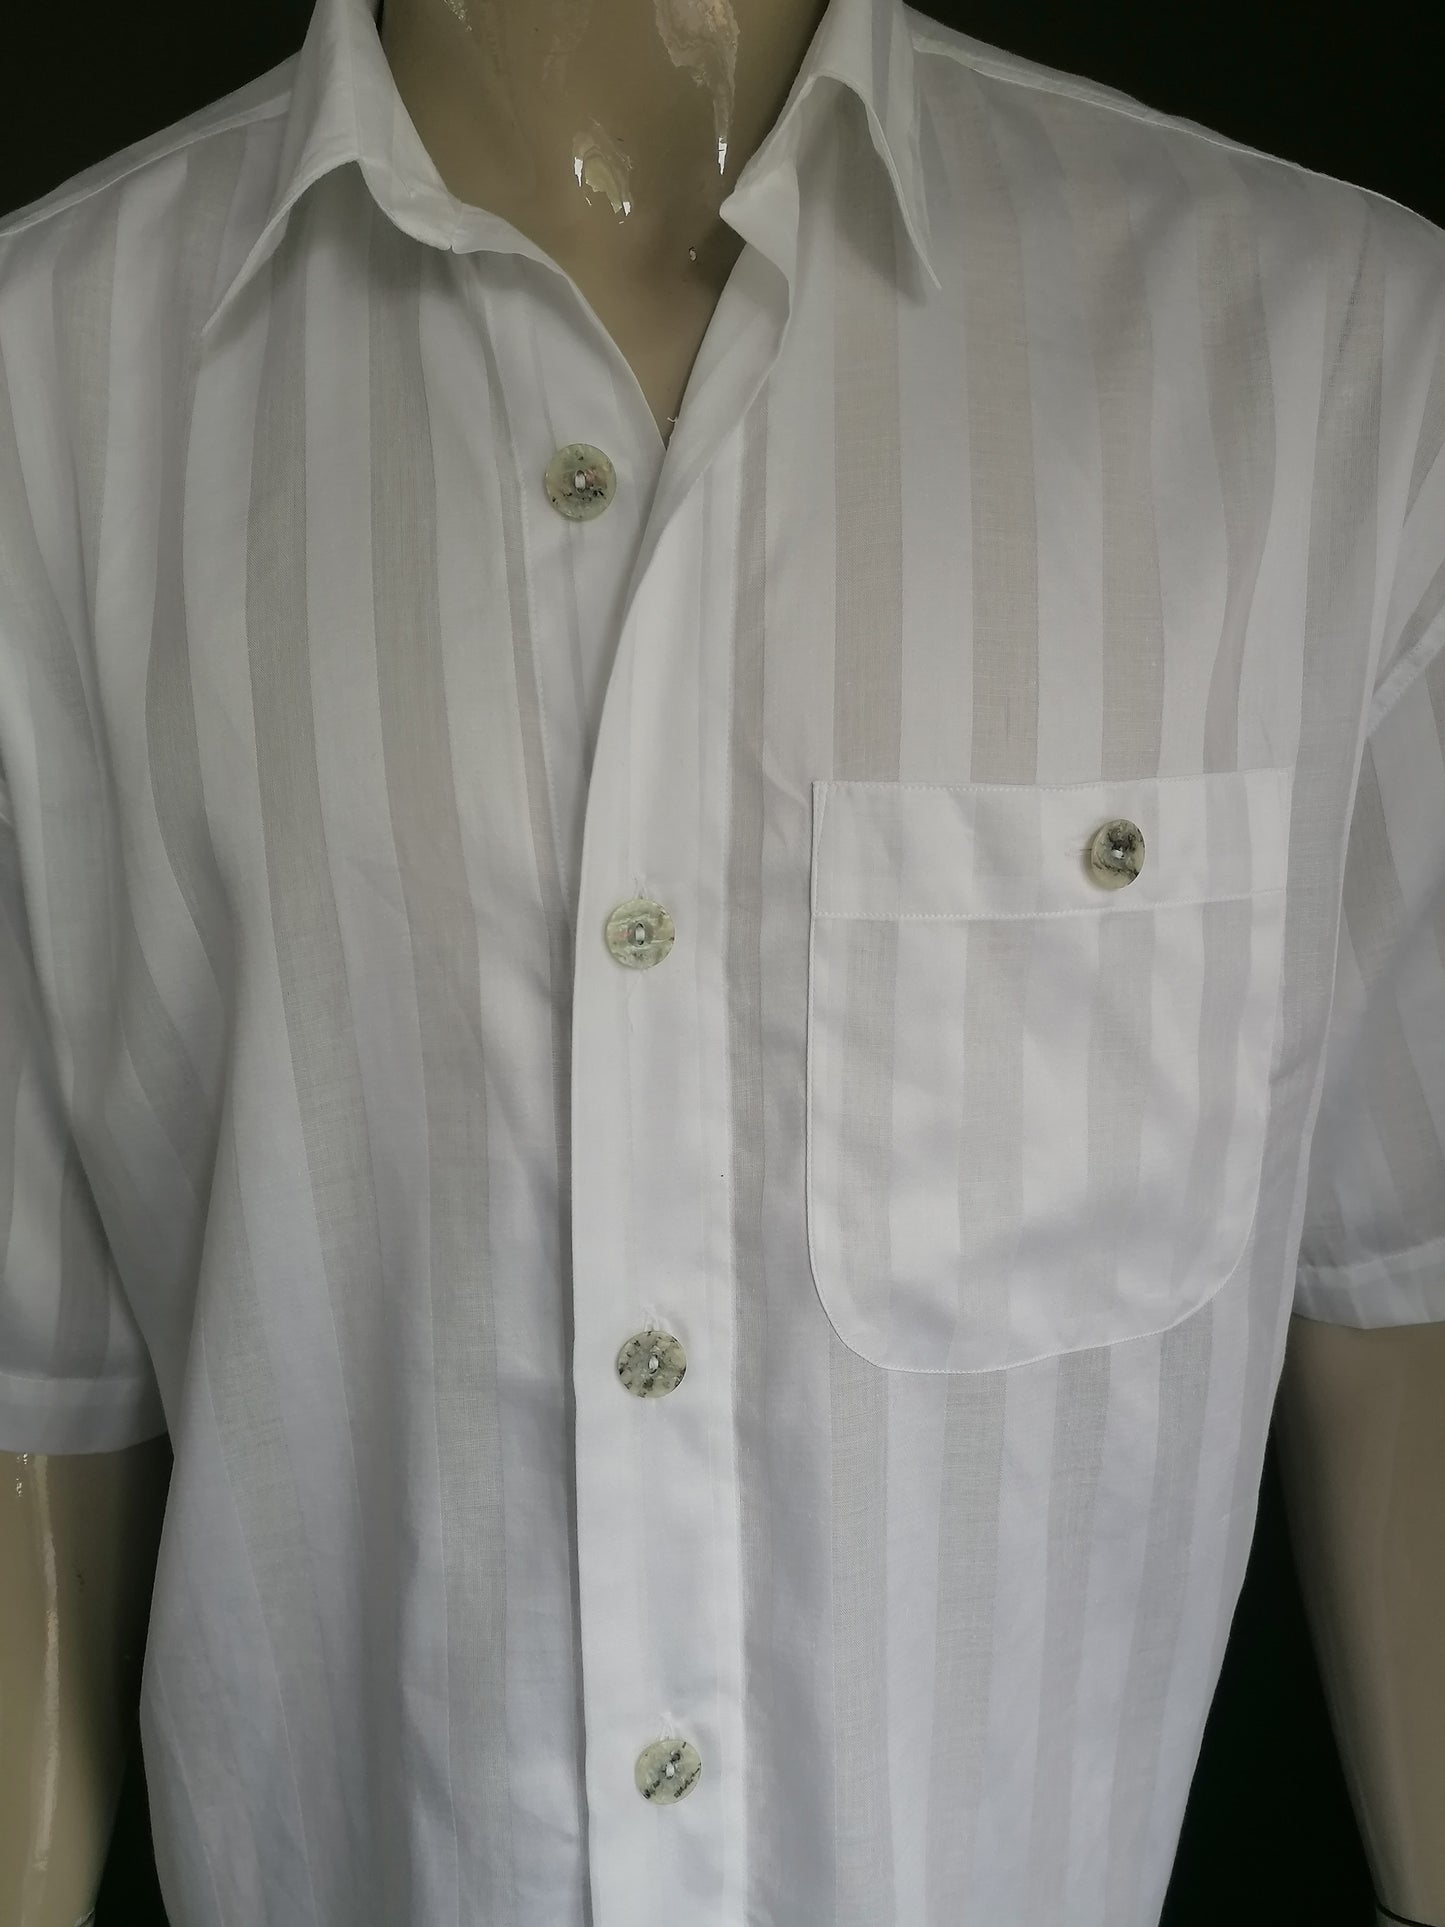 Vintage Signum Shirt Shirt Sleeve und größere Knöpfe. Weiß gestreiftes Motiv. Größe xl.